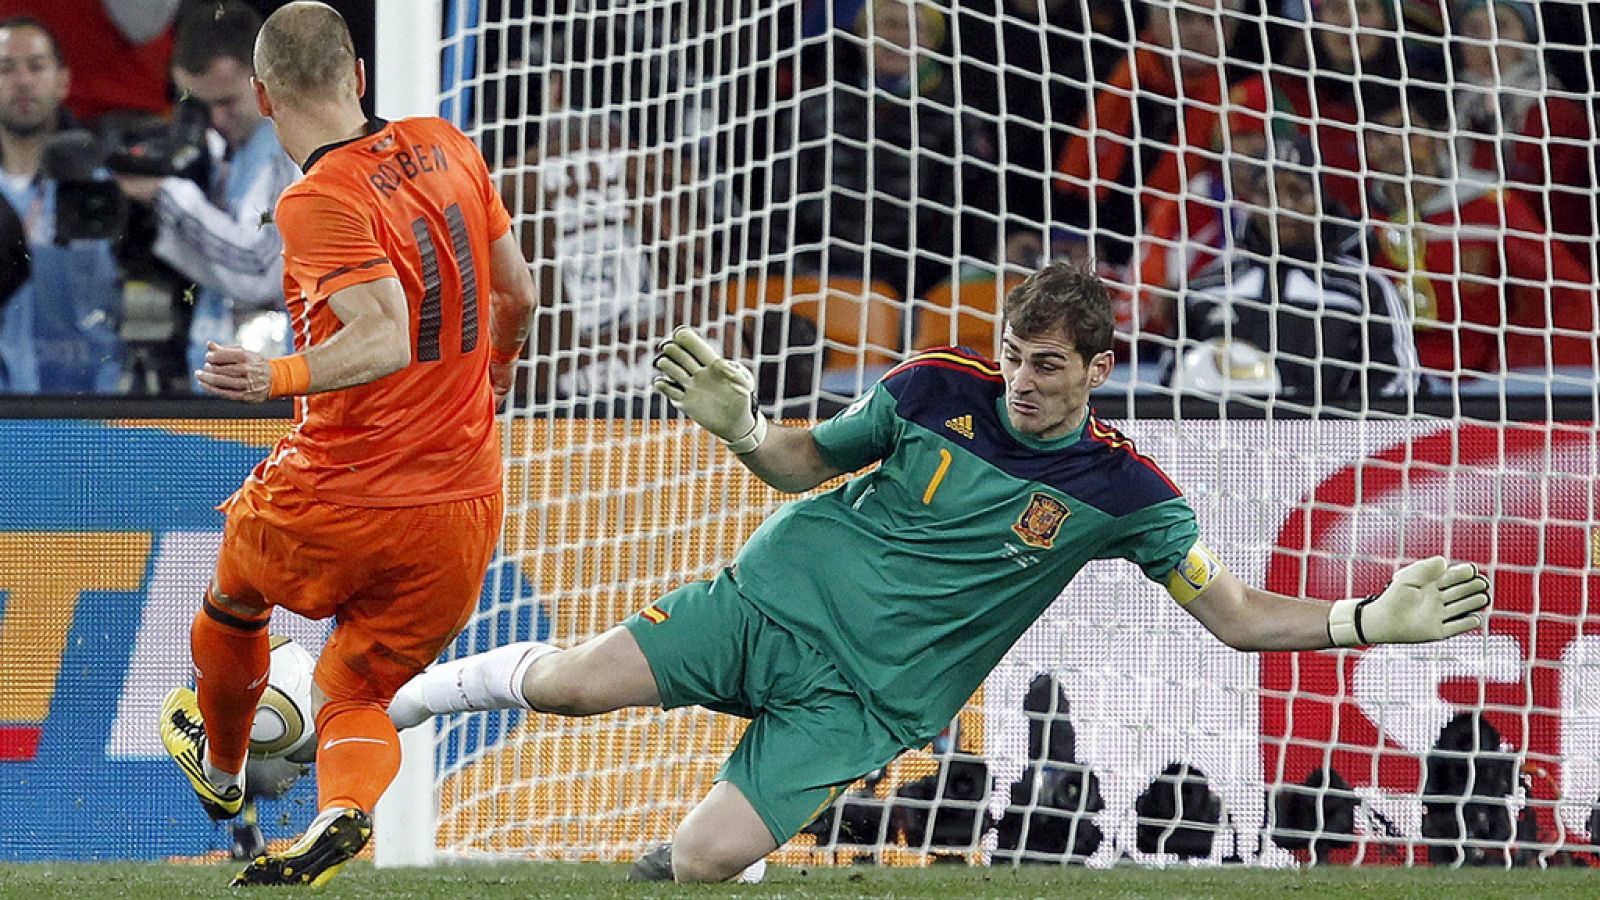 Fútbol - Telediario. Iker Casillas anuncia su retirada del fútbol - VER AHORA.